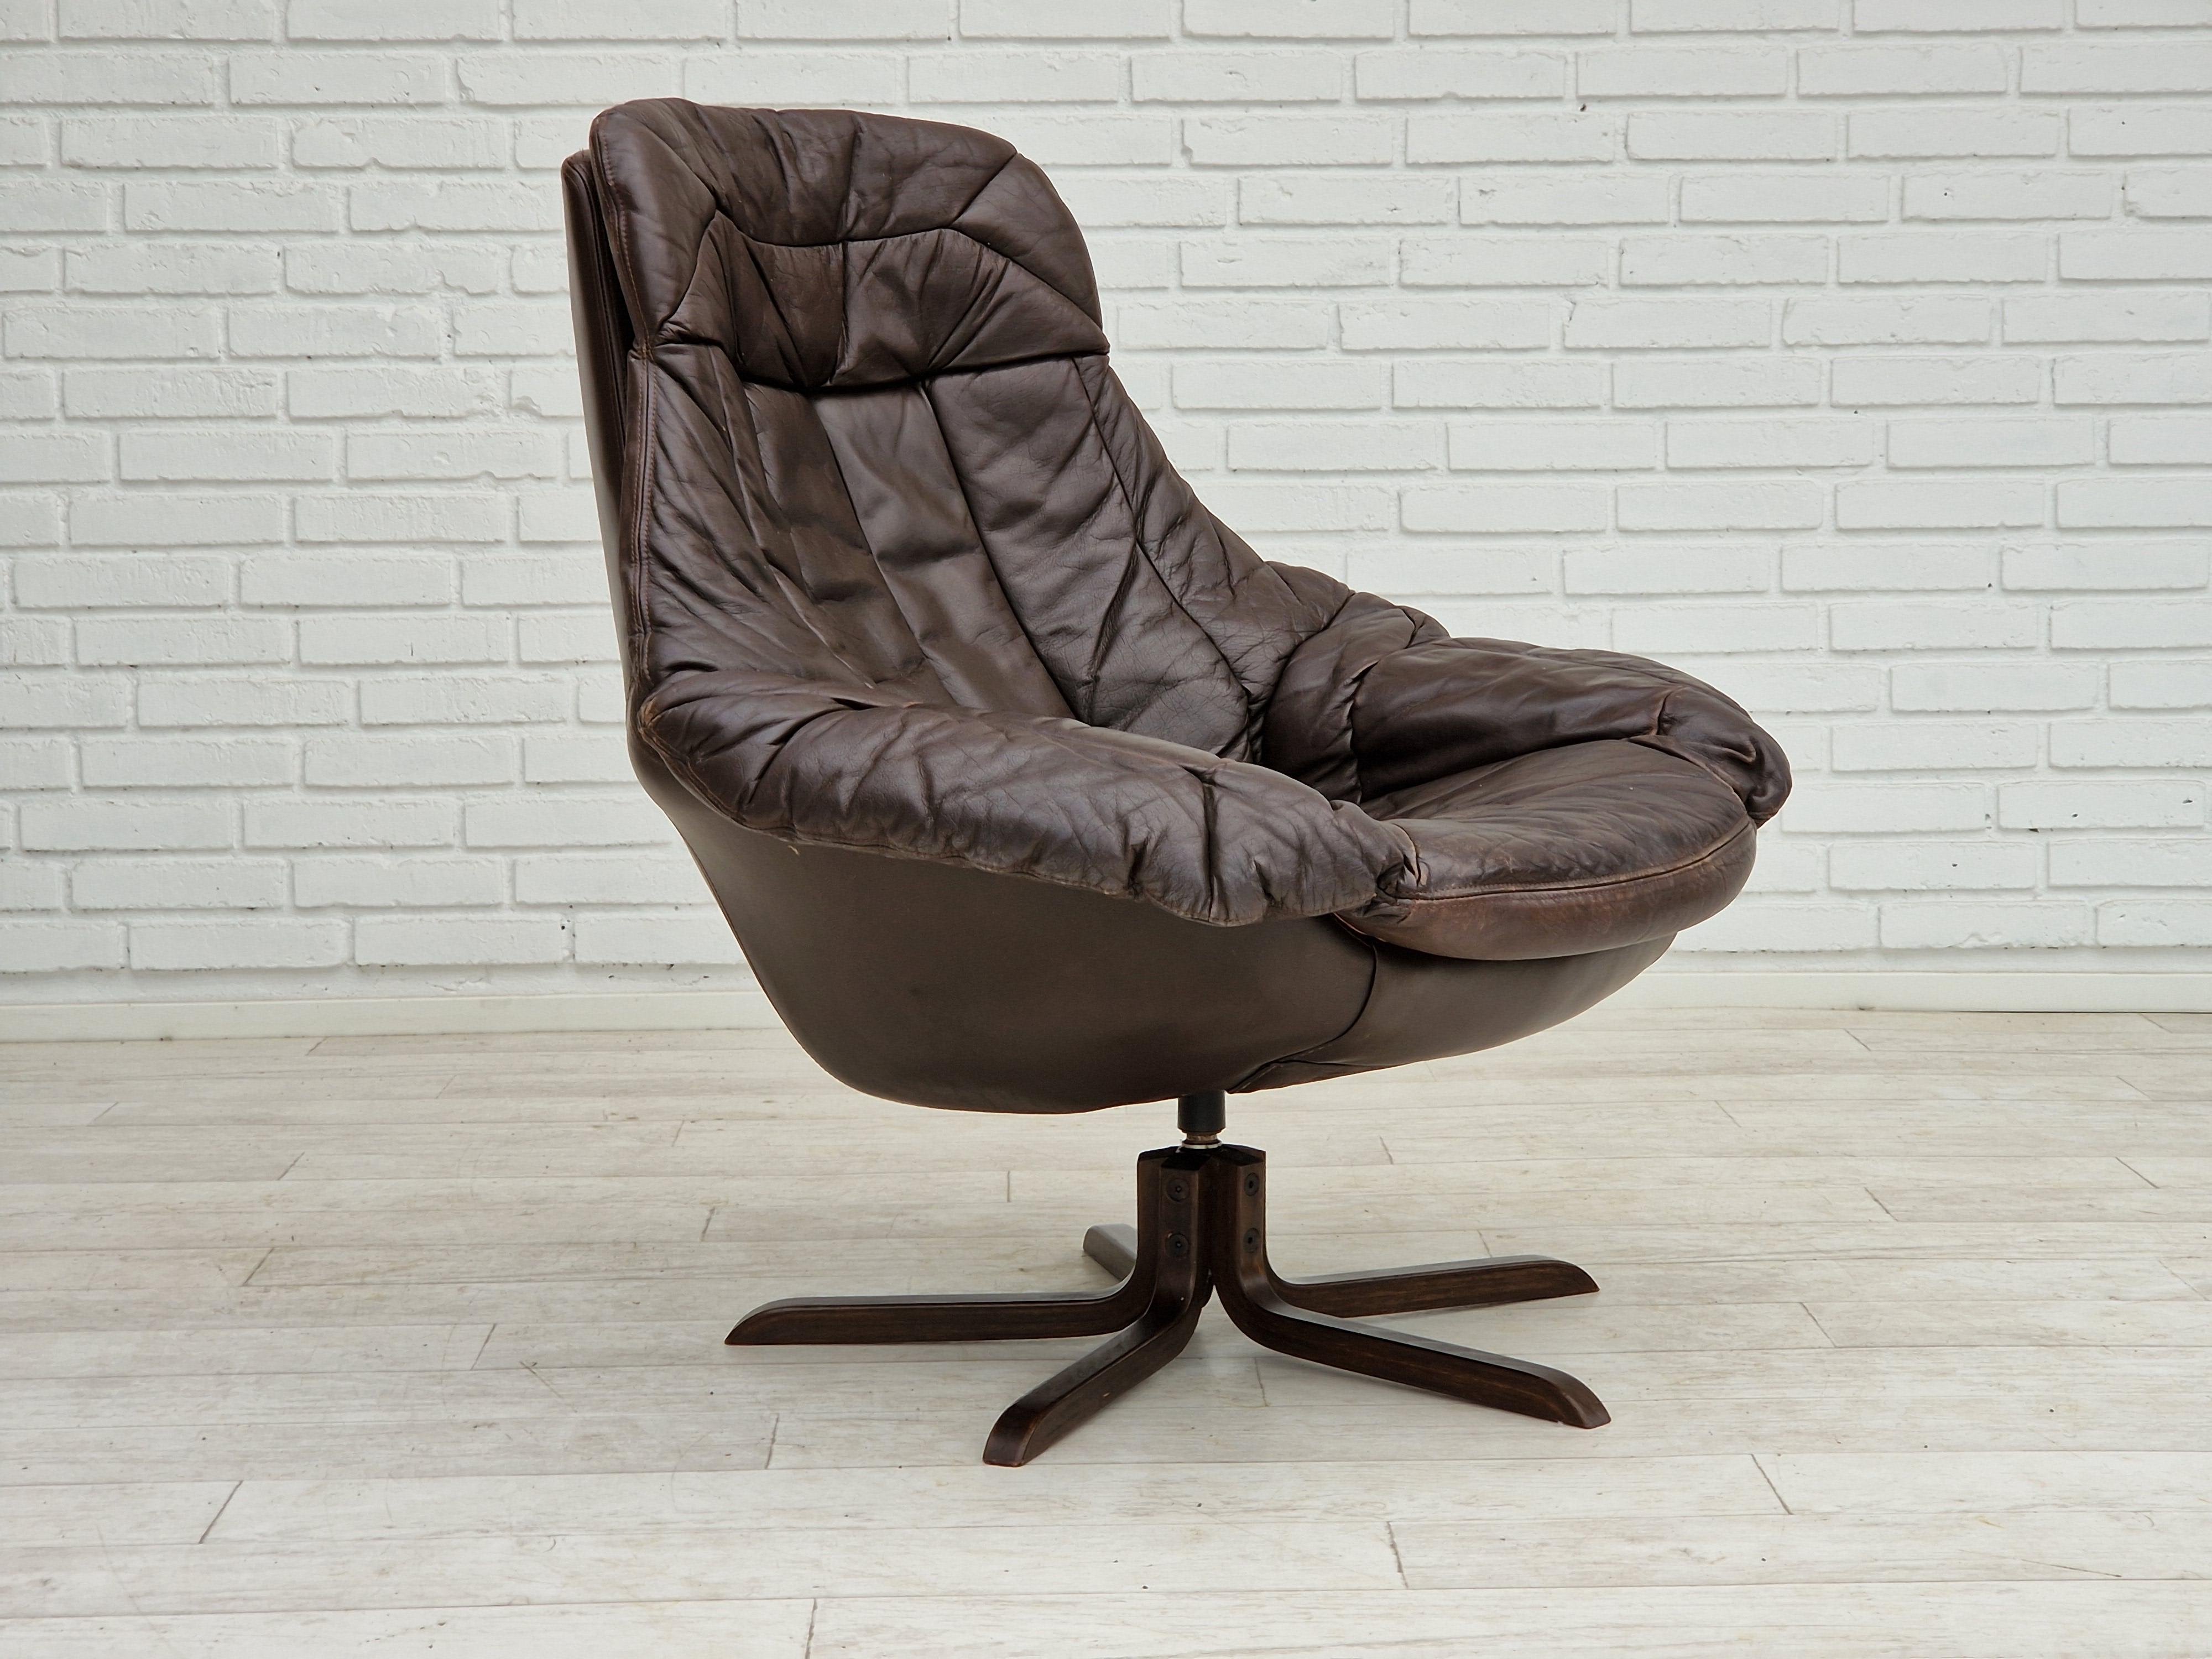 Années 1970, design danois de Henry Walter Klein, modèle de fauteuil Silhouette. Bon état d'origine : pas d'odeurs ni de taches. La chaise ne tourne pas, elle est installée de façon permanente. Fabriqué par le fabricant de meubles danois Bramin